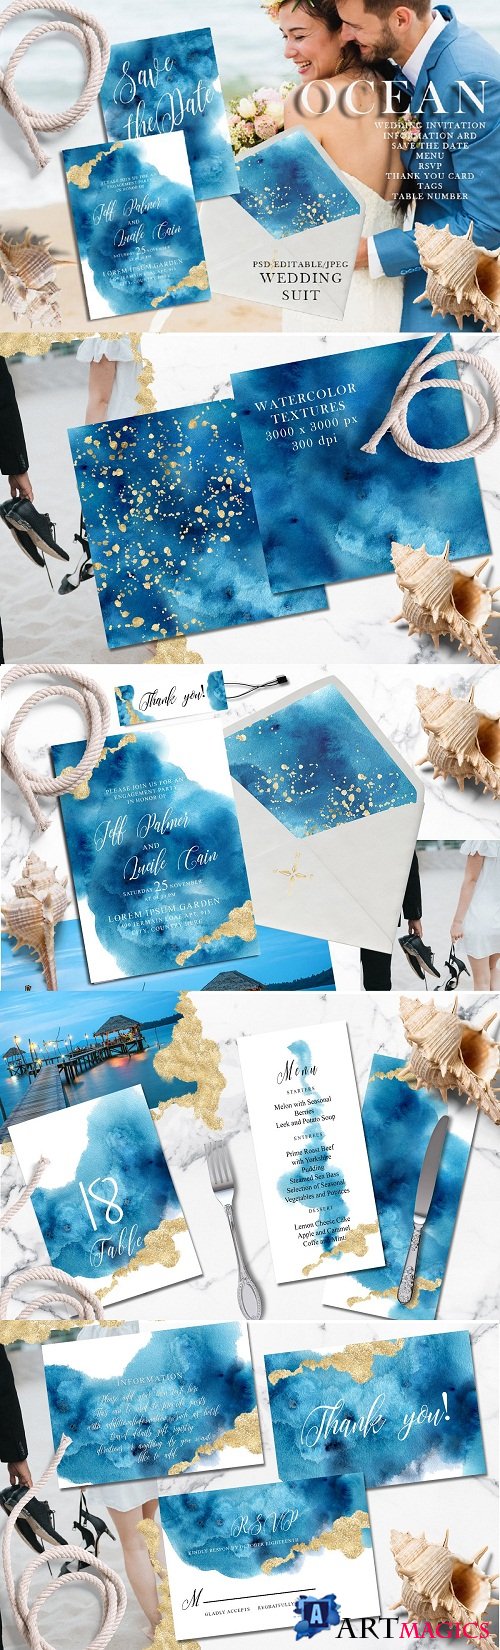 Ocean wedding invitations suit 3557254